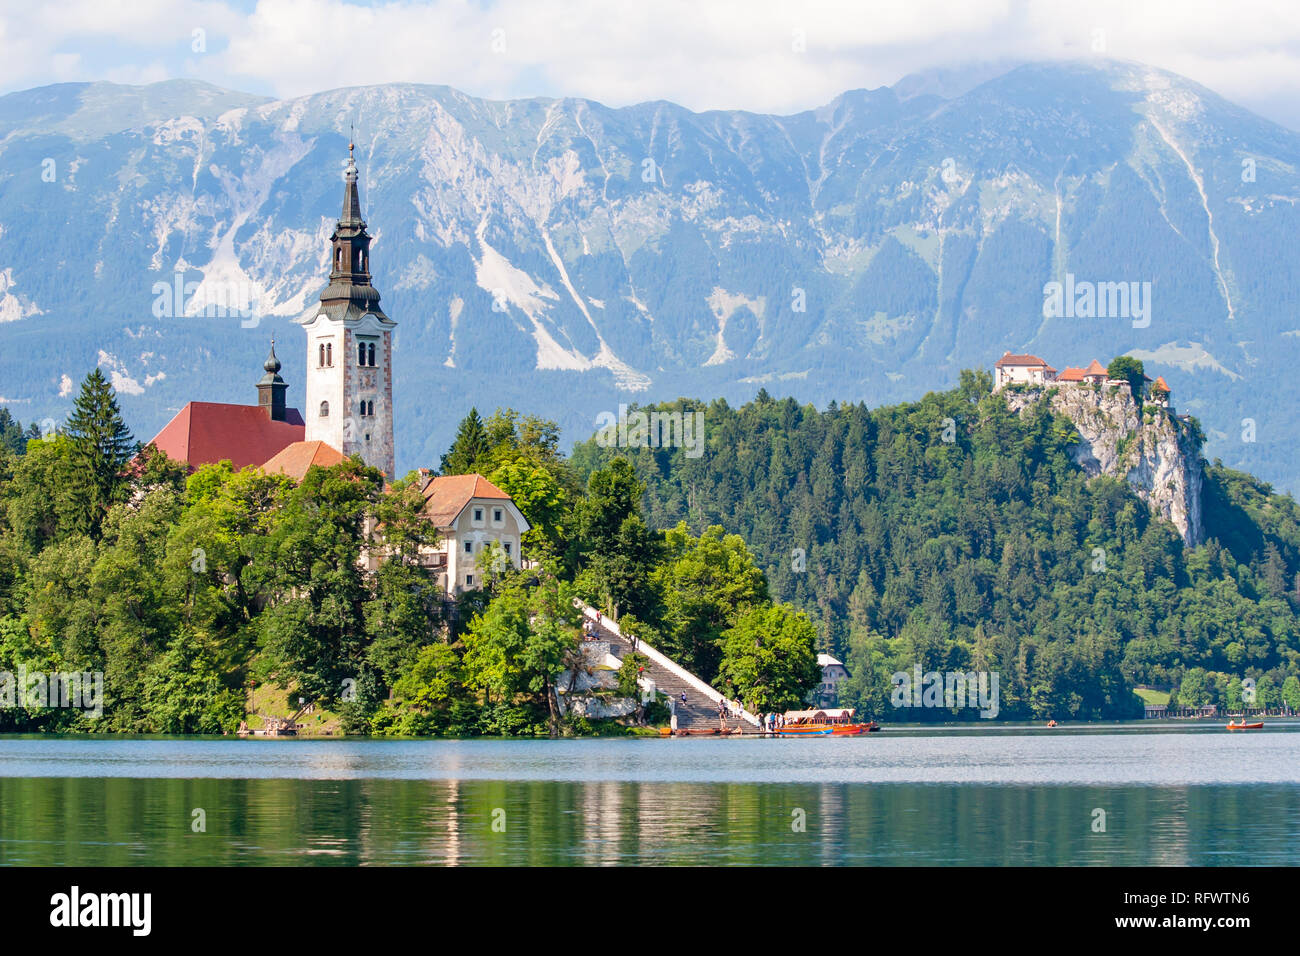 Petite île avec une église, un château sur un rocher, et offre une vue sur la montagne, le lac de Bled, Slovénie, Europe Banque D'Images